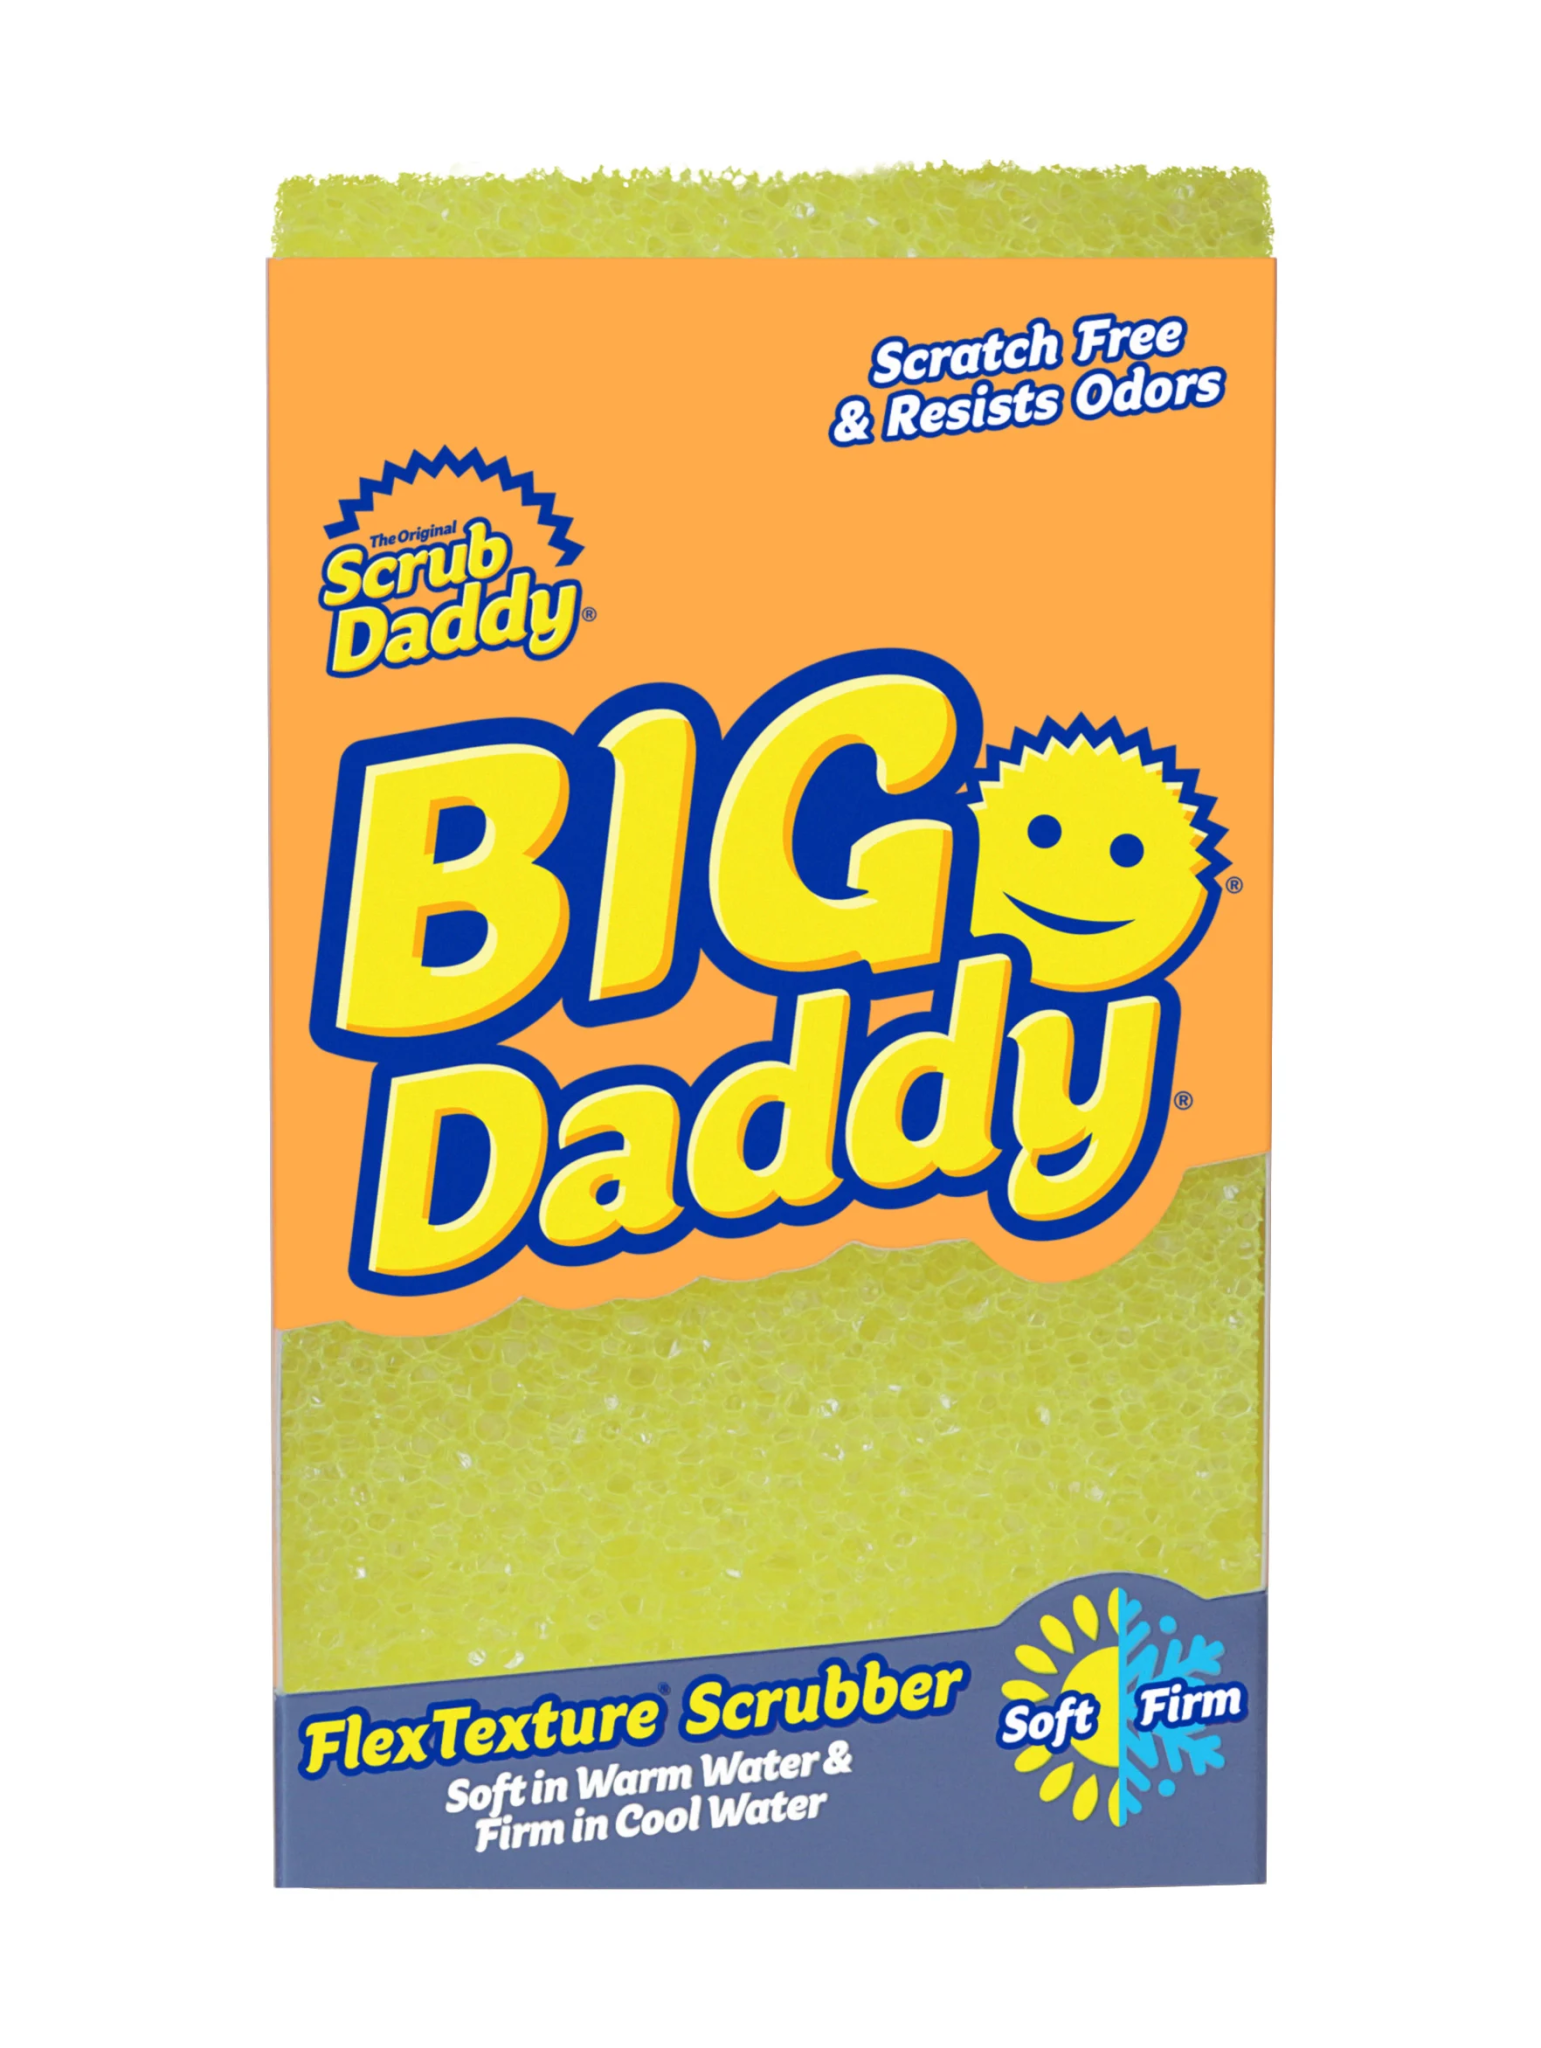 BIG Daddy Sponge - Prim in Proper